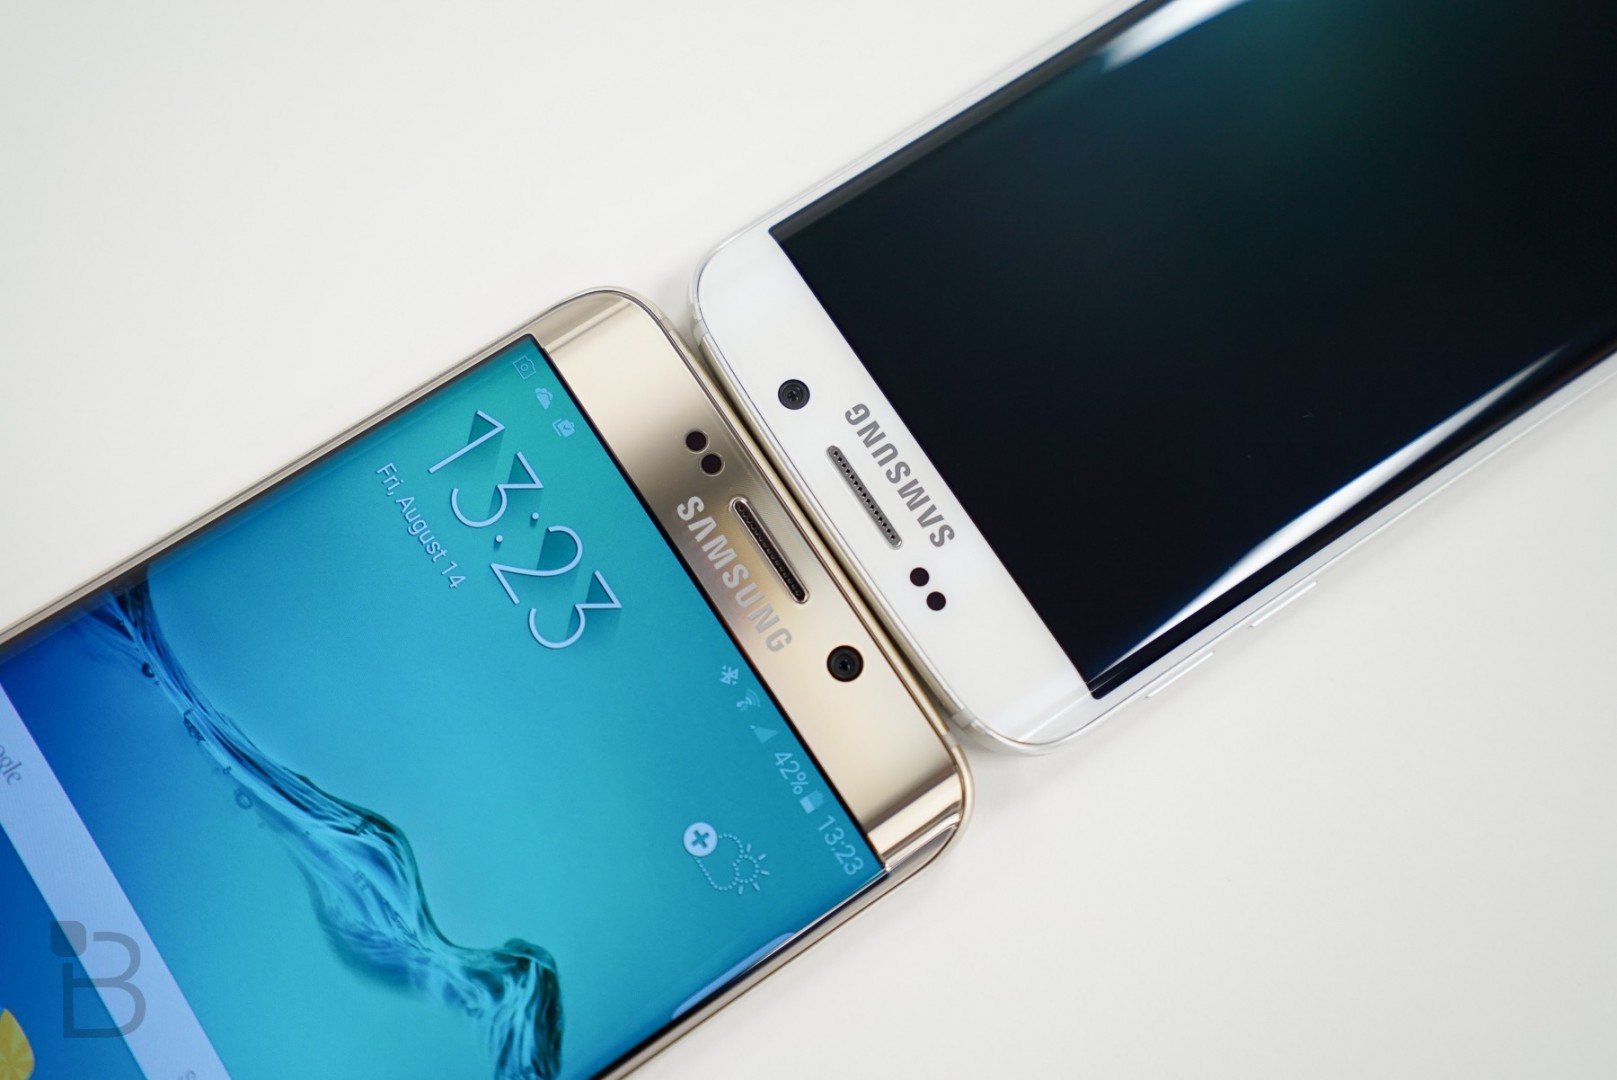 Samsung ปล่อยอัปเดตความปลอดภัยให้กับอุปกรณ์กลุ่ม Galaxy